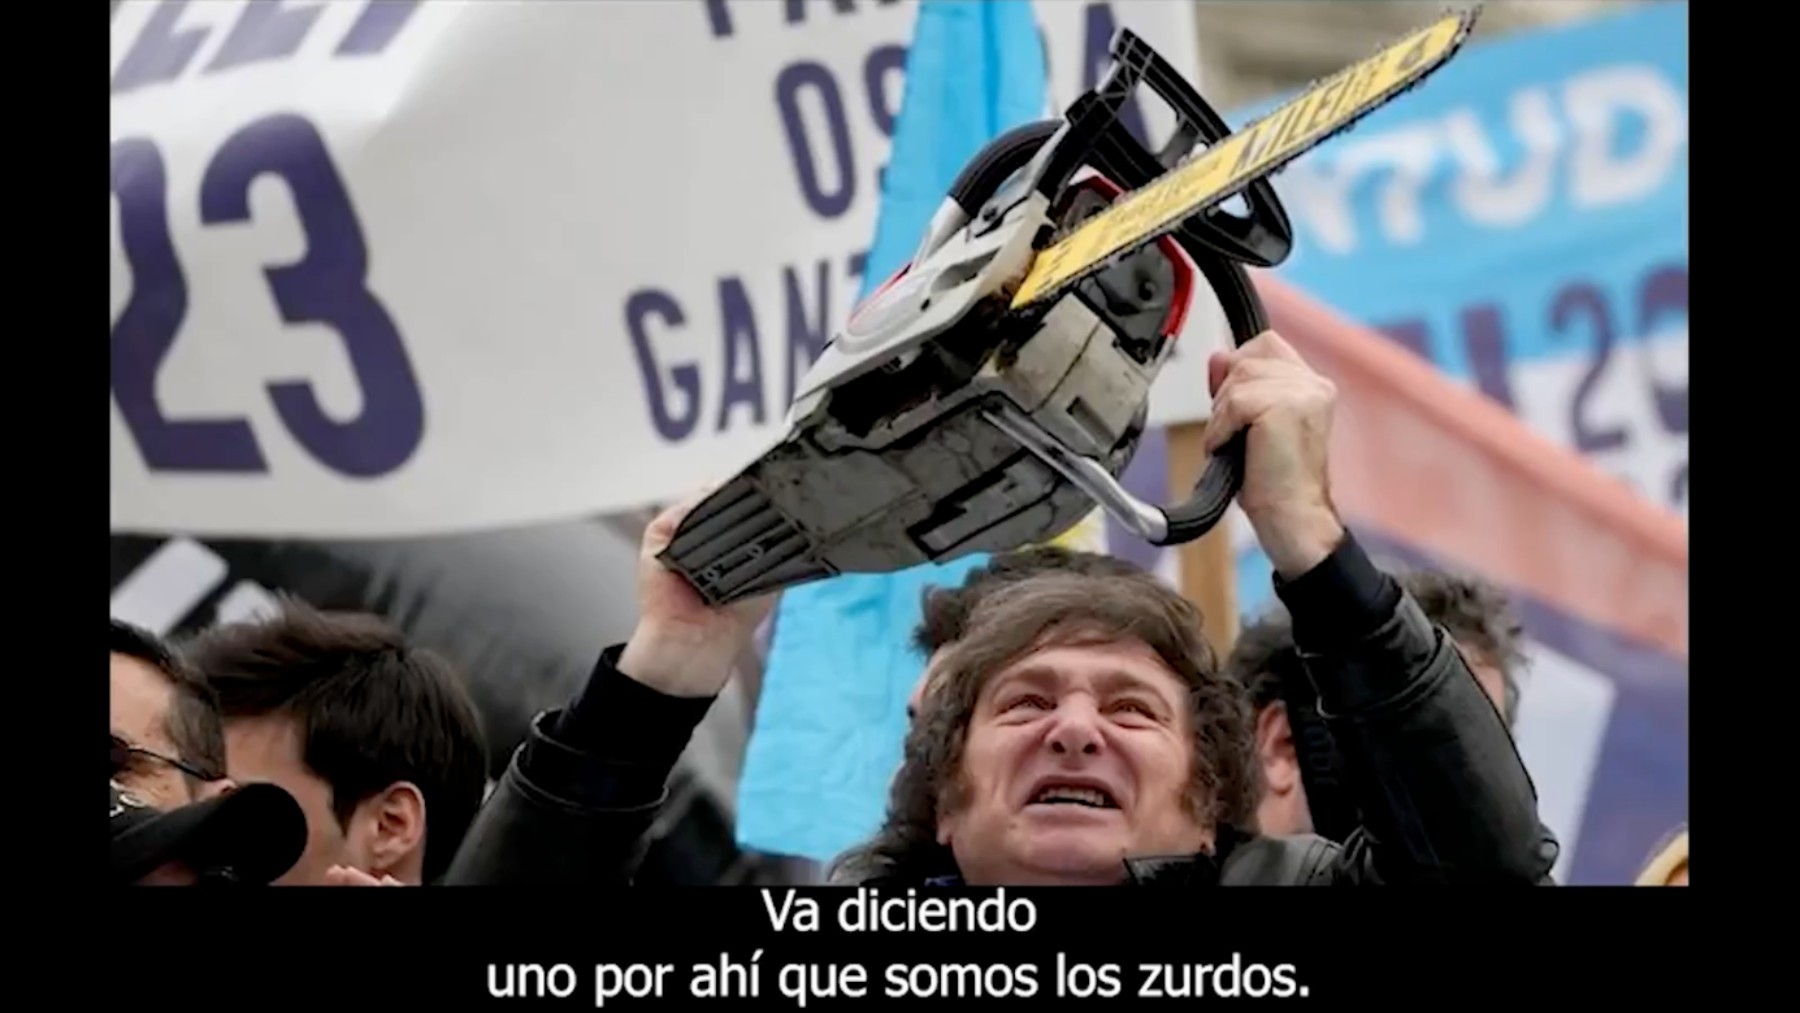 Video «Zurdos y Zurdas» de PSOE.